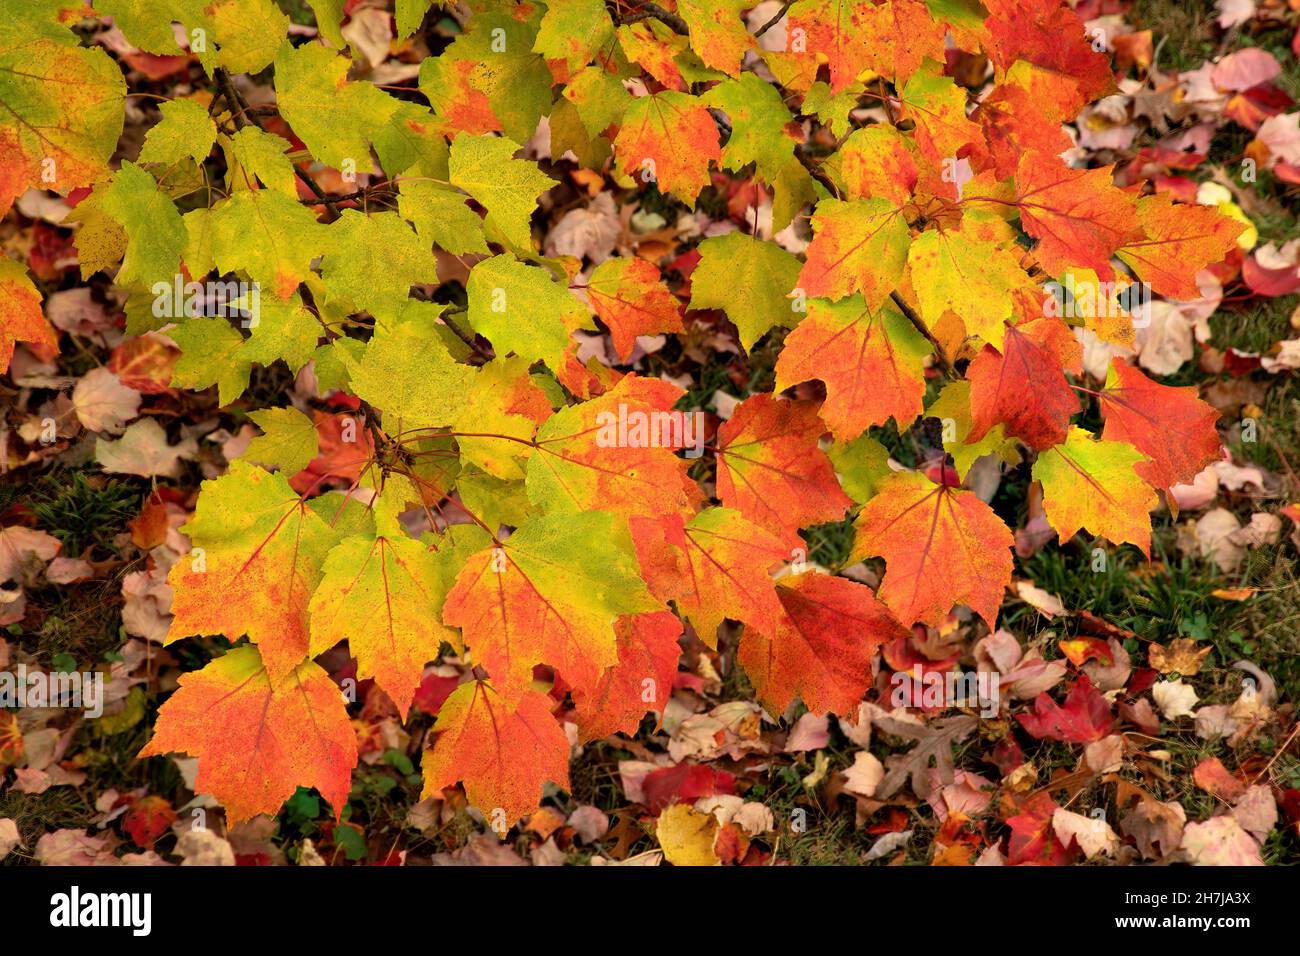 Stagioni mutevoli - la transizione della natura dall'estate all'autunno. Ramo colorato di foglie di acero; alcune ancora verdi, altre che transitano ai colori autunnali. Foto Stock